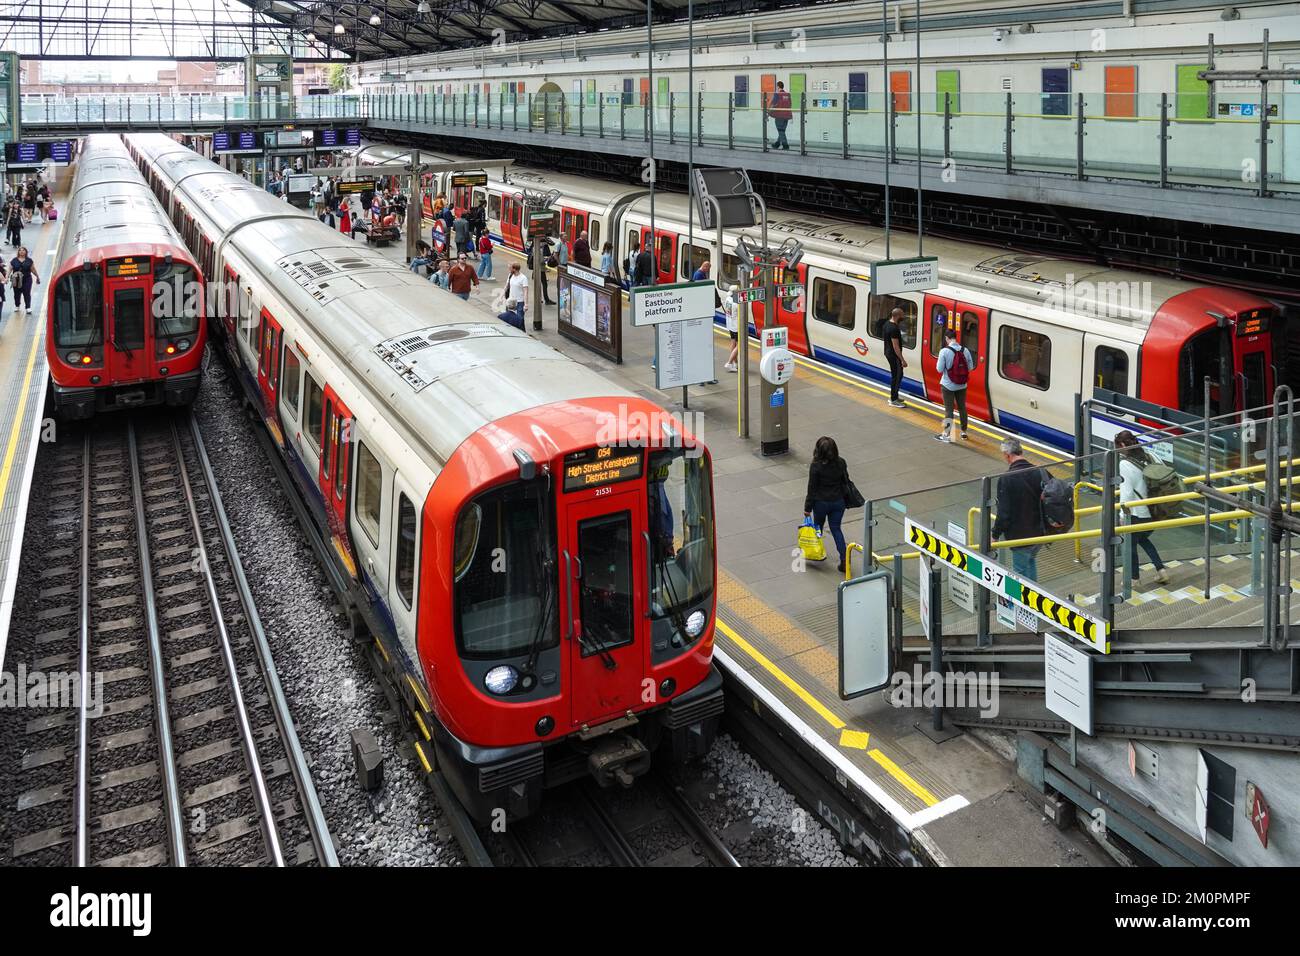 Passagers en plate-forme au métro Earl's court, station de métro Londres Angleterre Royaume-Uni Banque D'Images